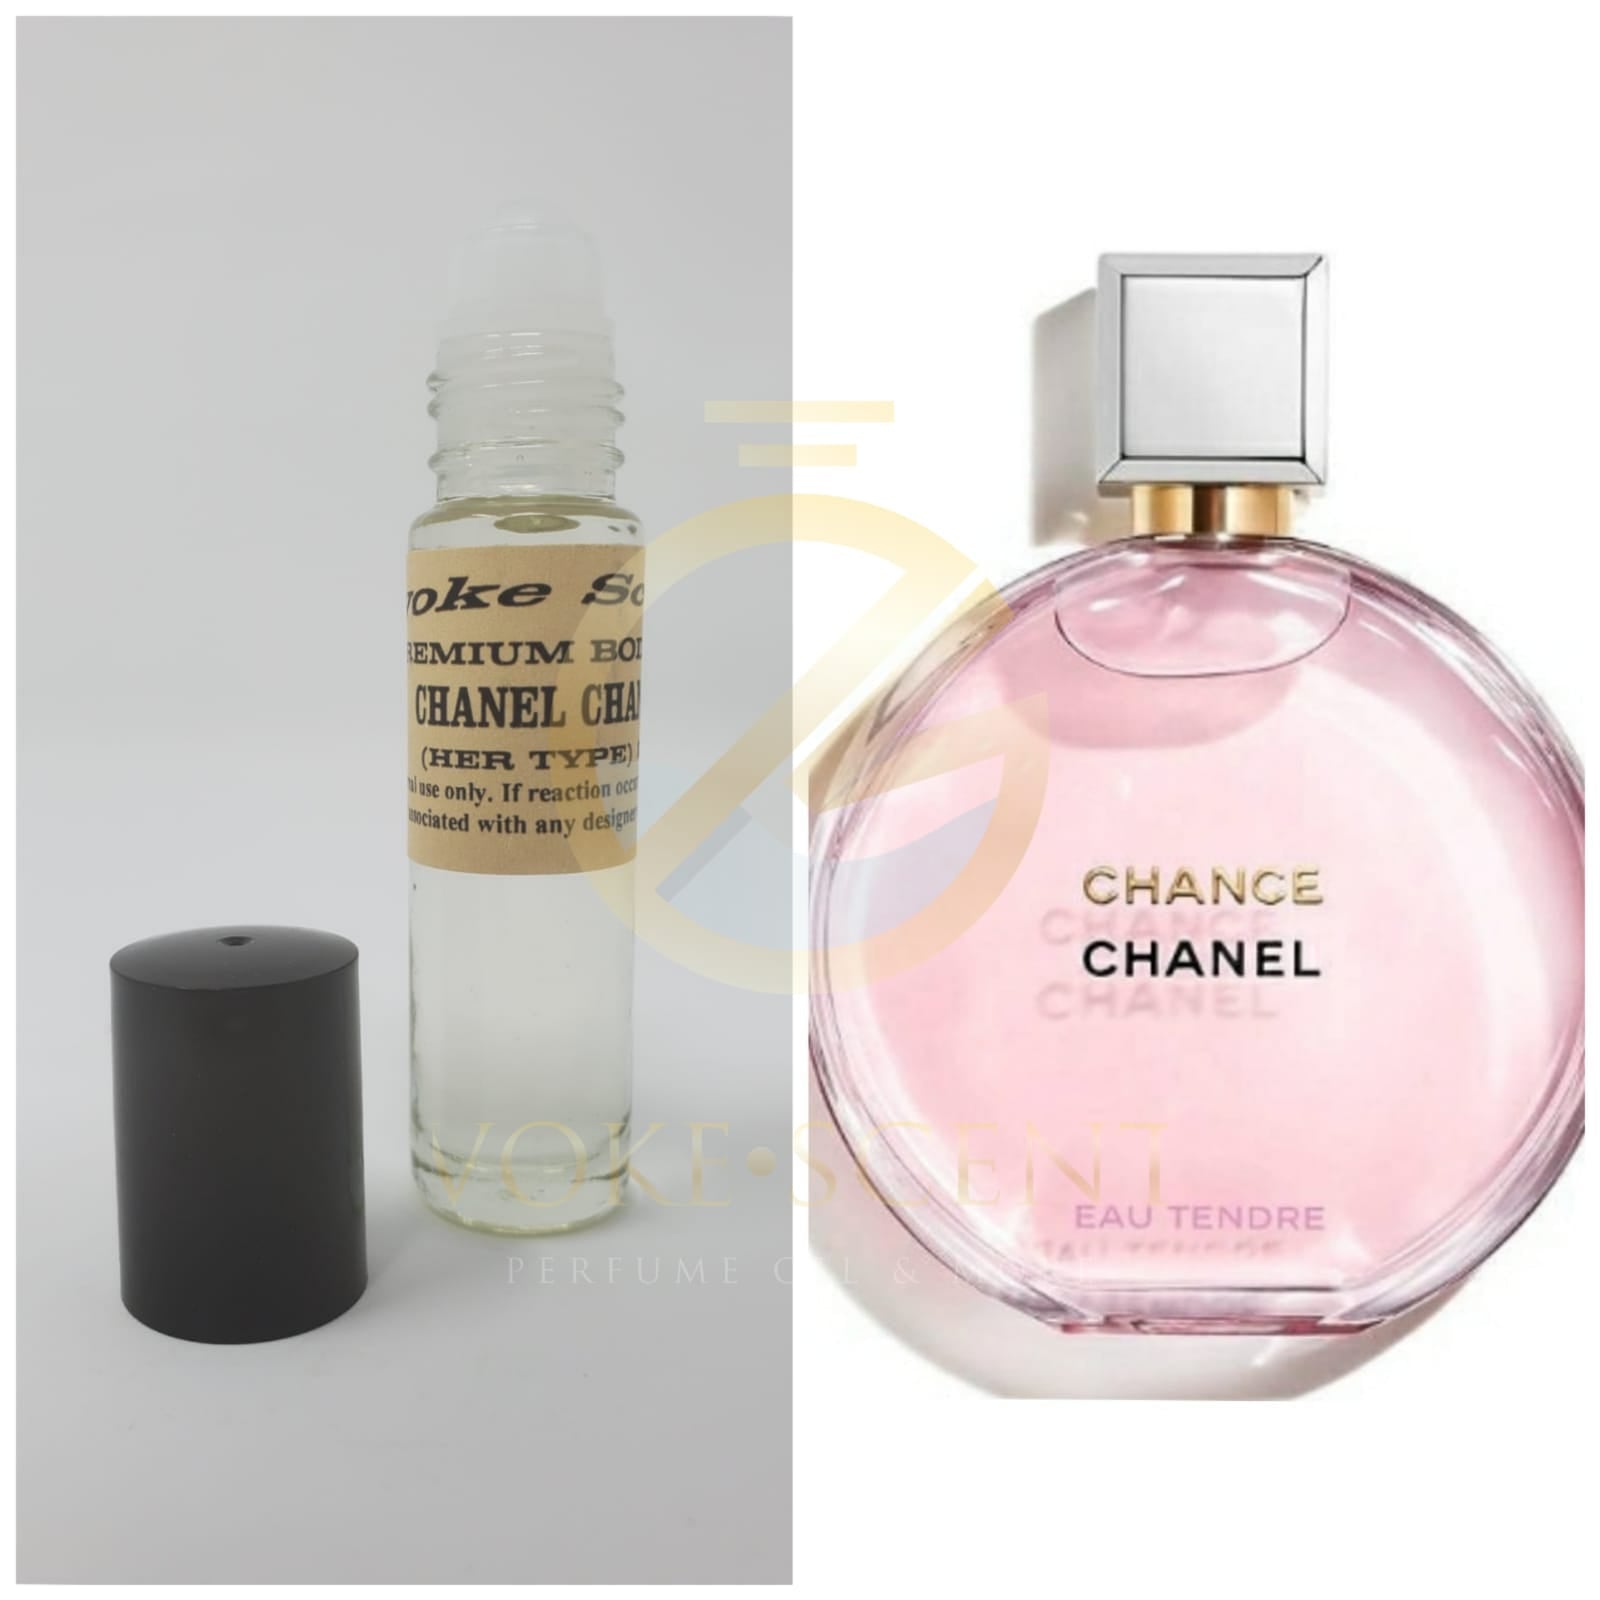 Chanel Chance Eau Tendre Type Women Perfume Oil Roll-On – Evoke Scents